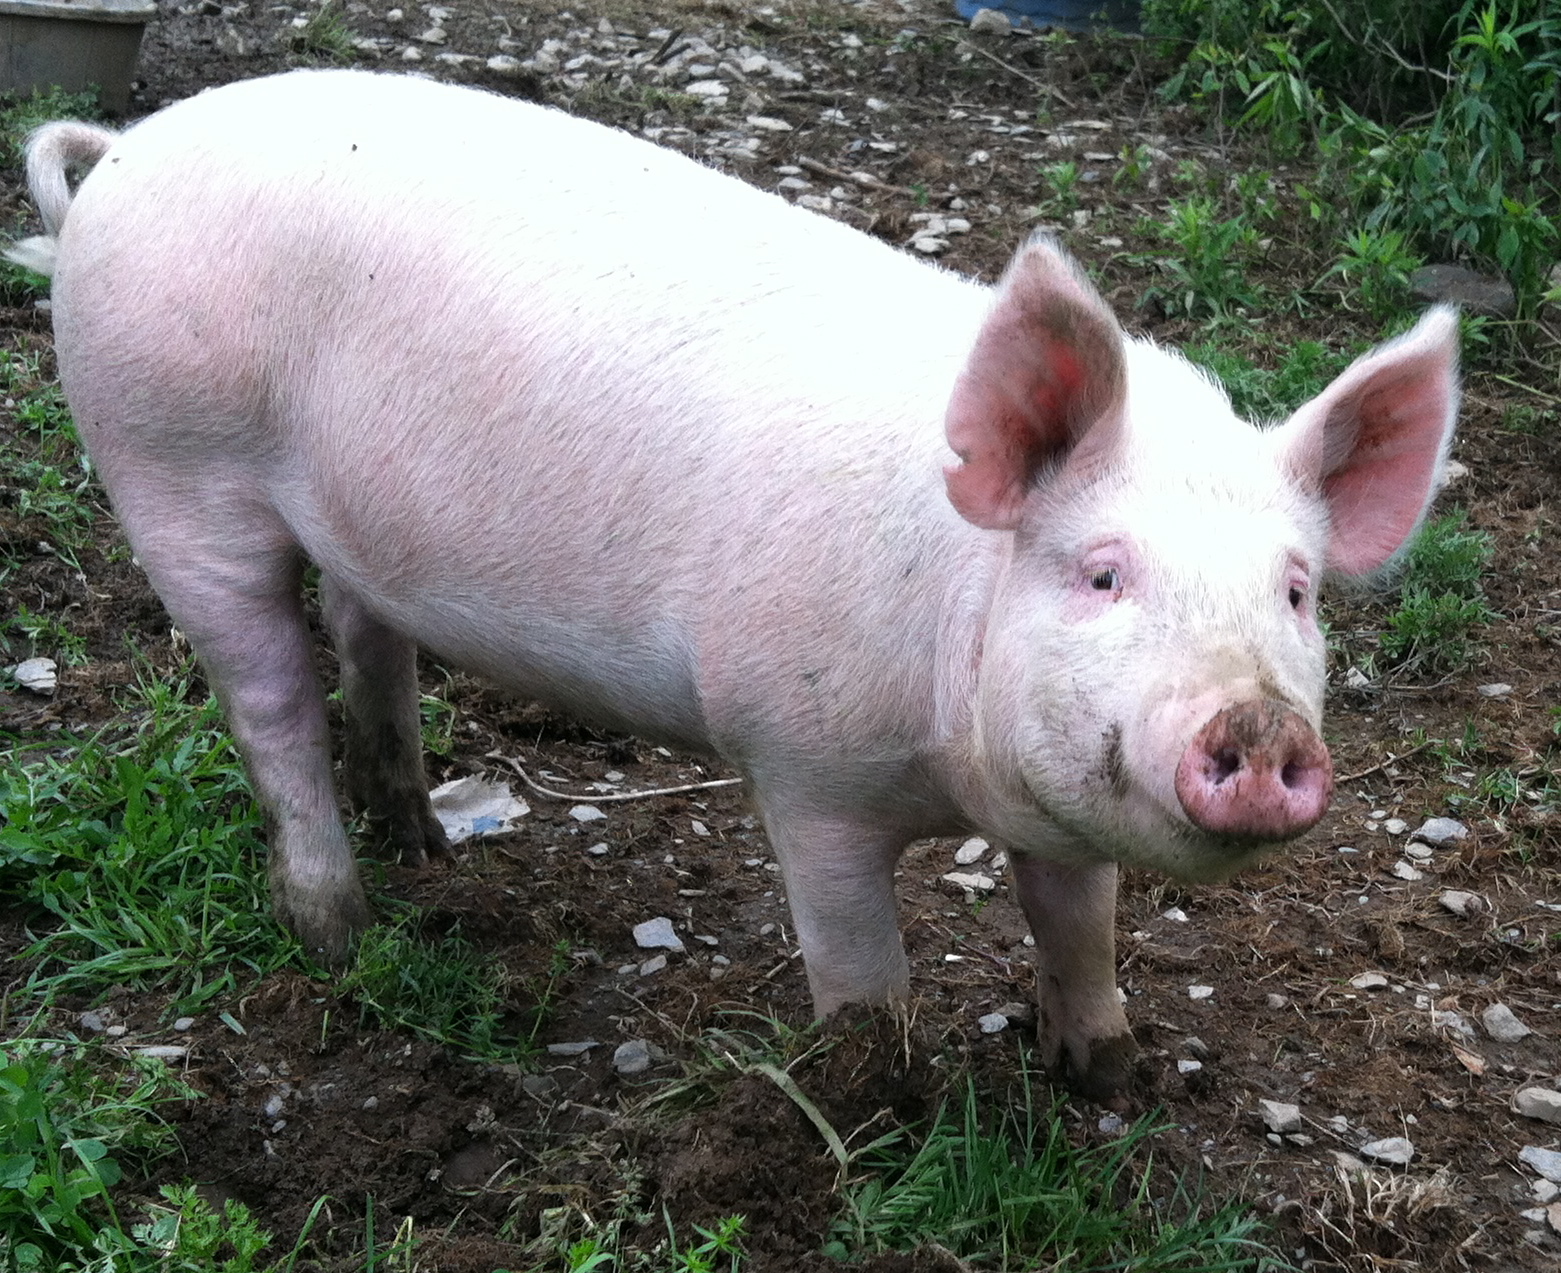 Pig in farm photo